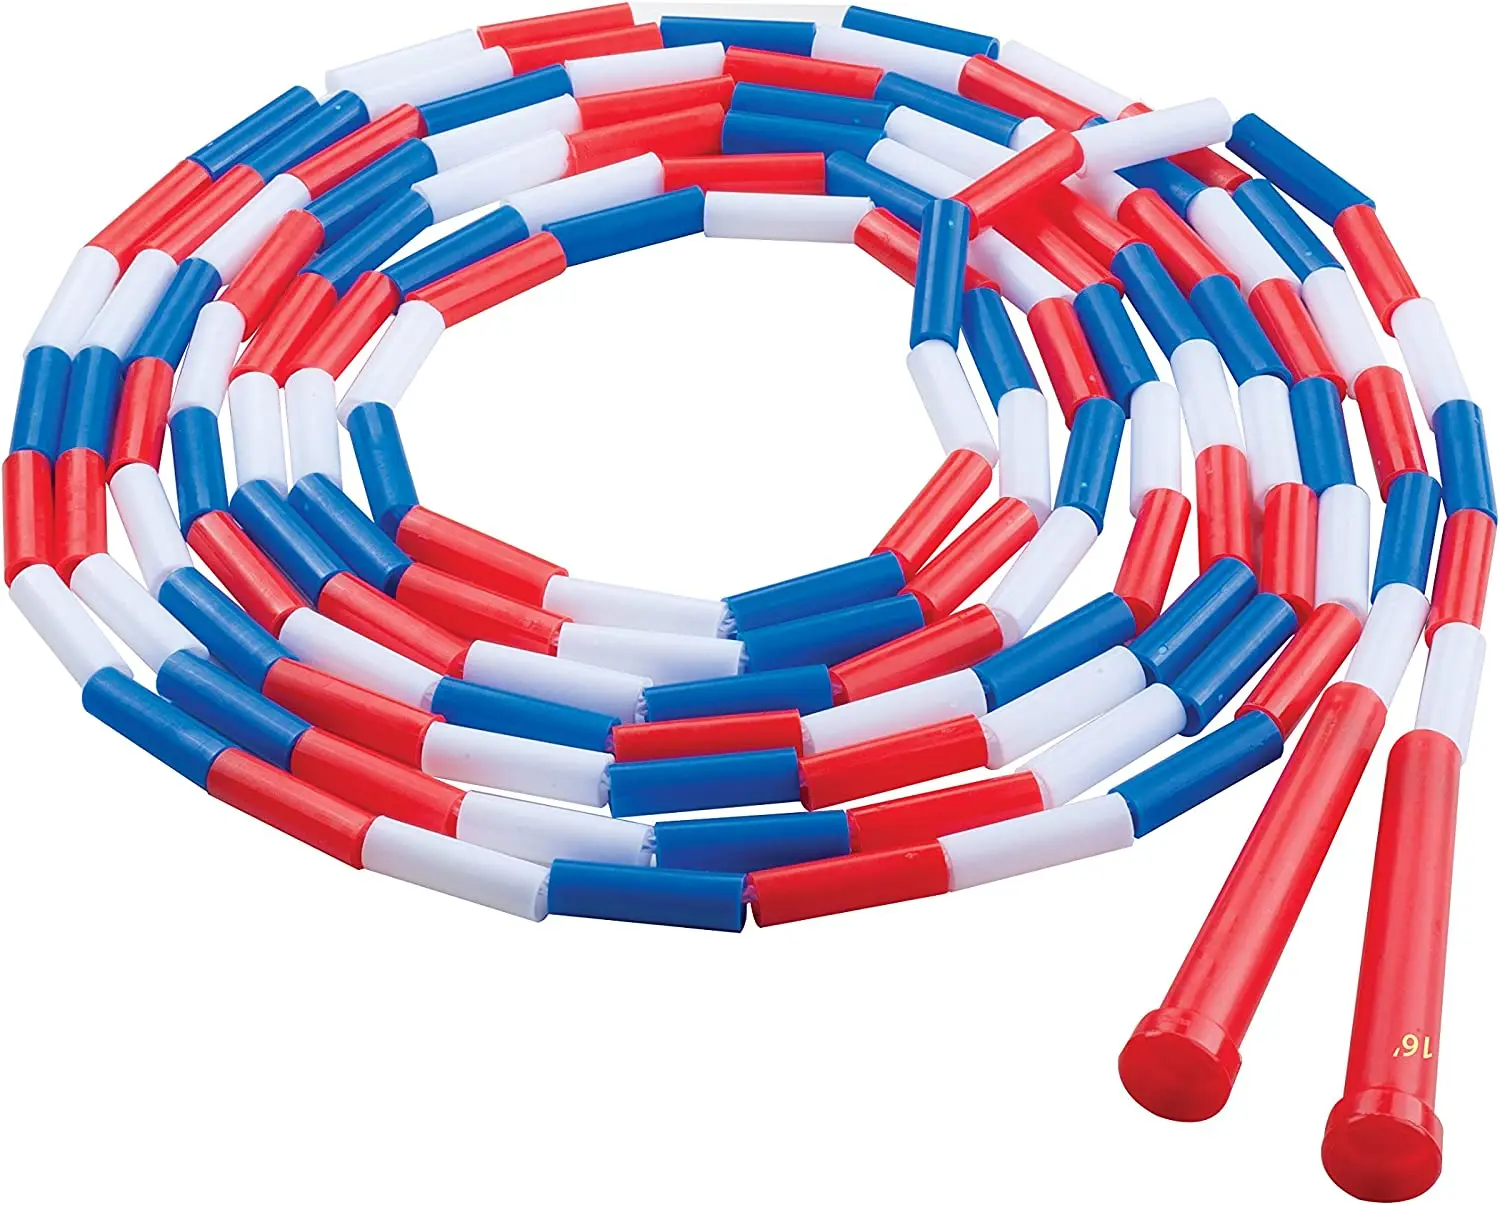 

Sports Corda de pular segmentada de plástico, vermelho/branco/azul, 4,9 m